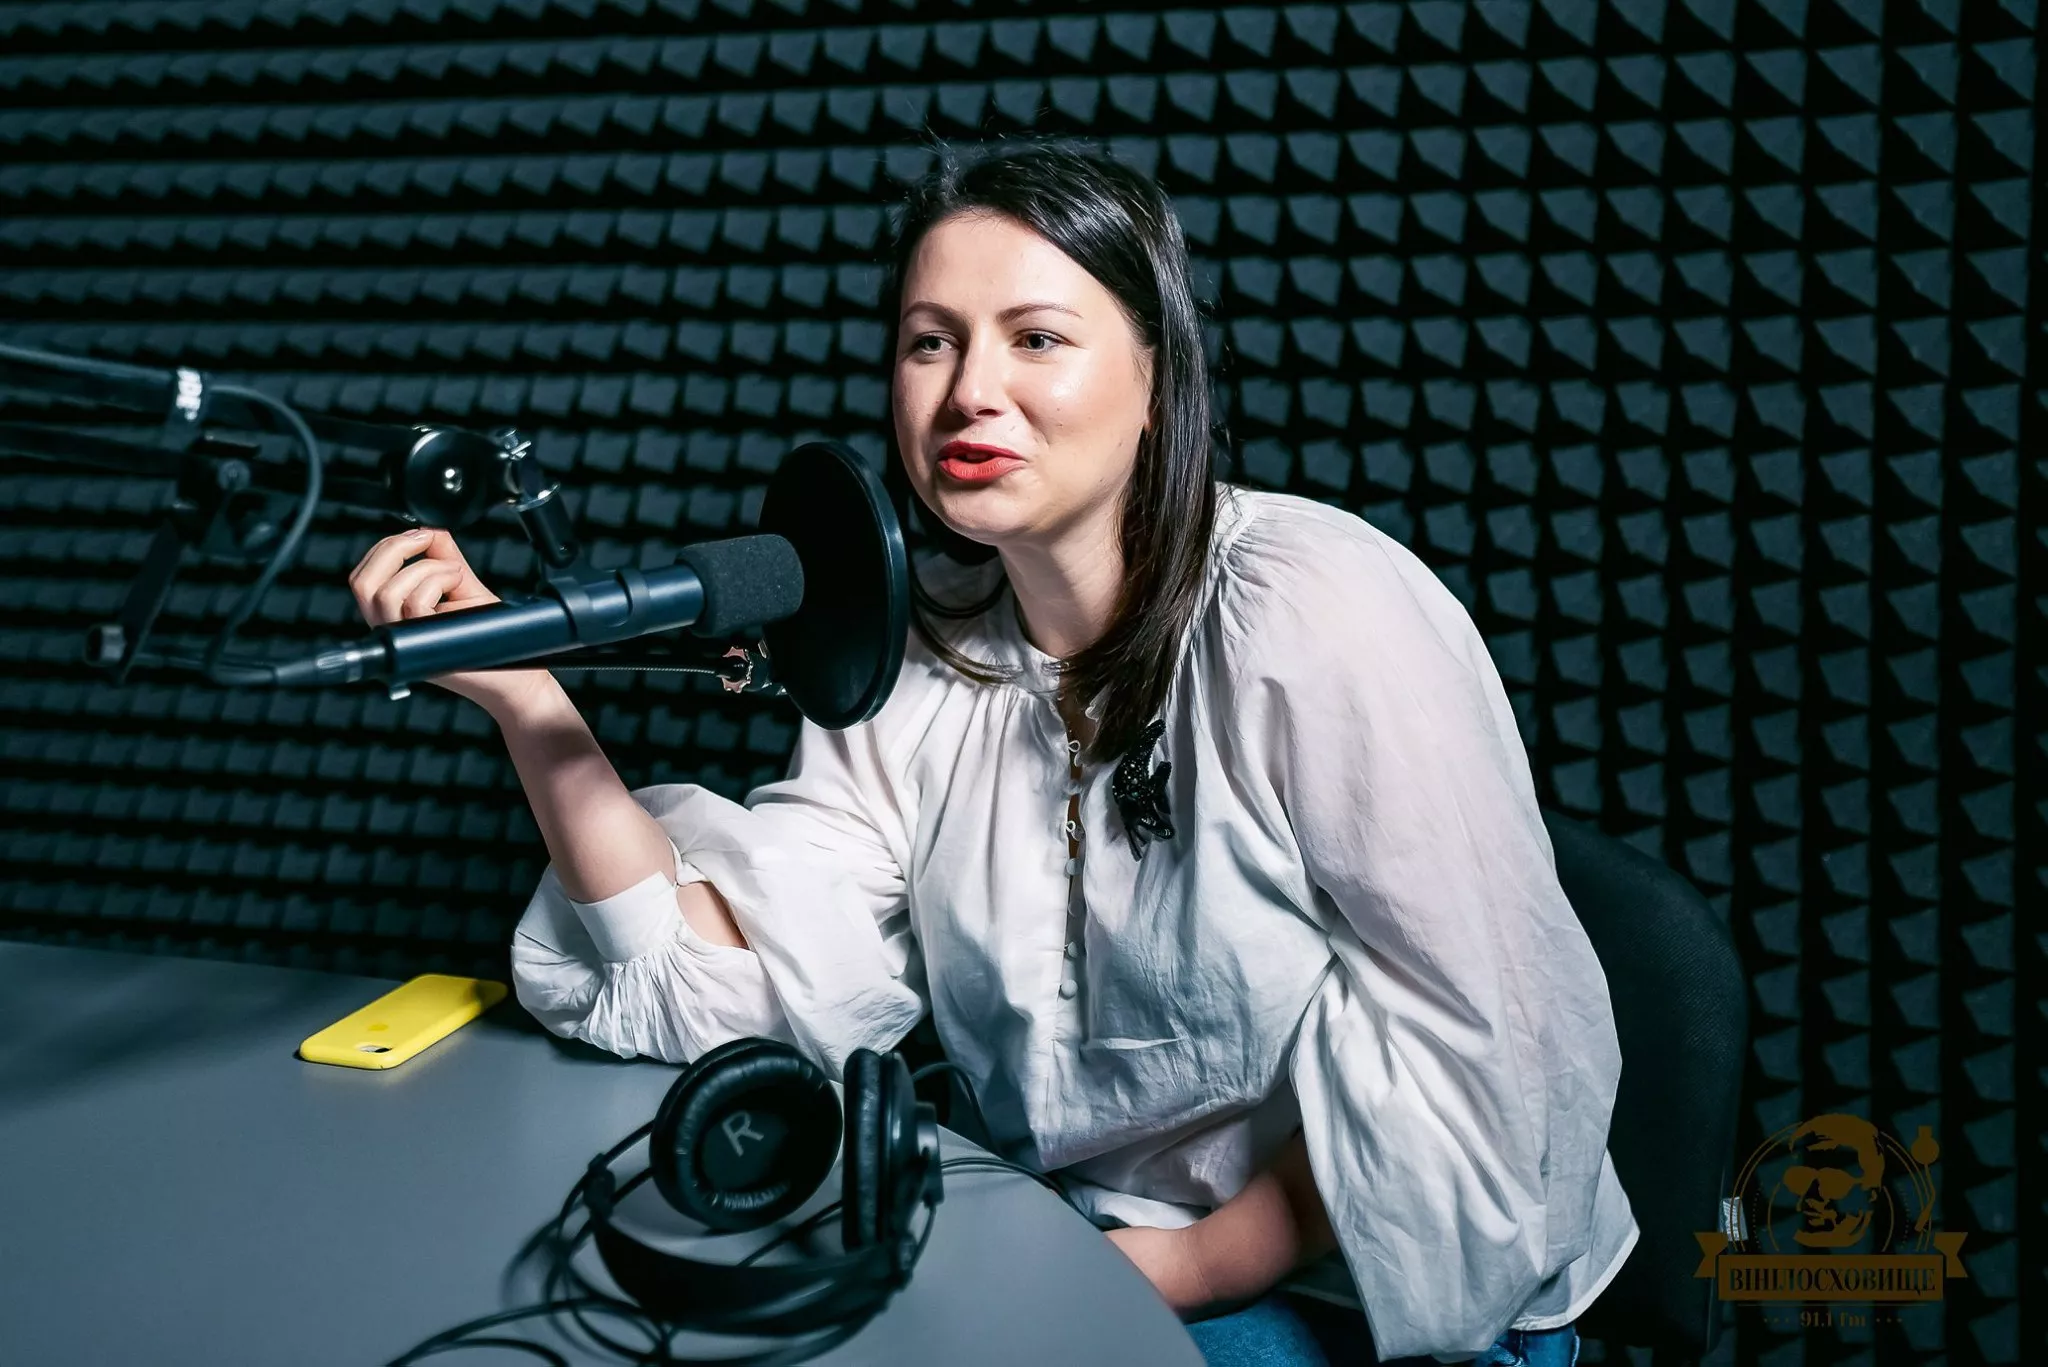 Ирина Земляная – медиаэксперт и общественный активист